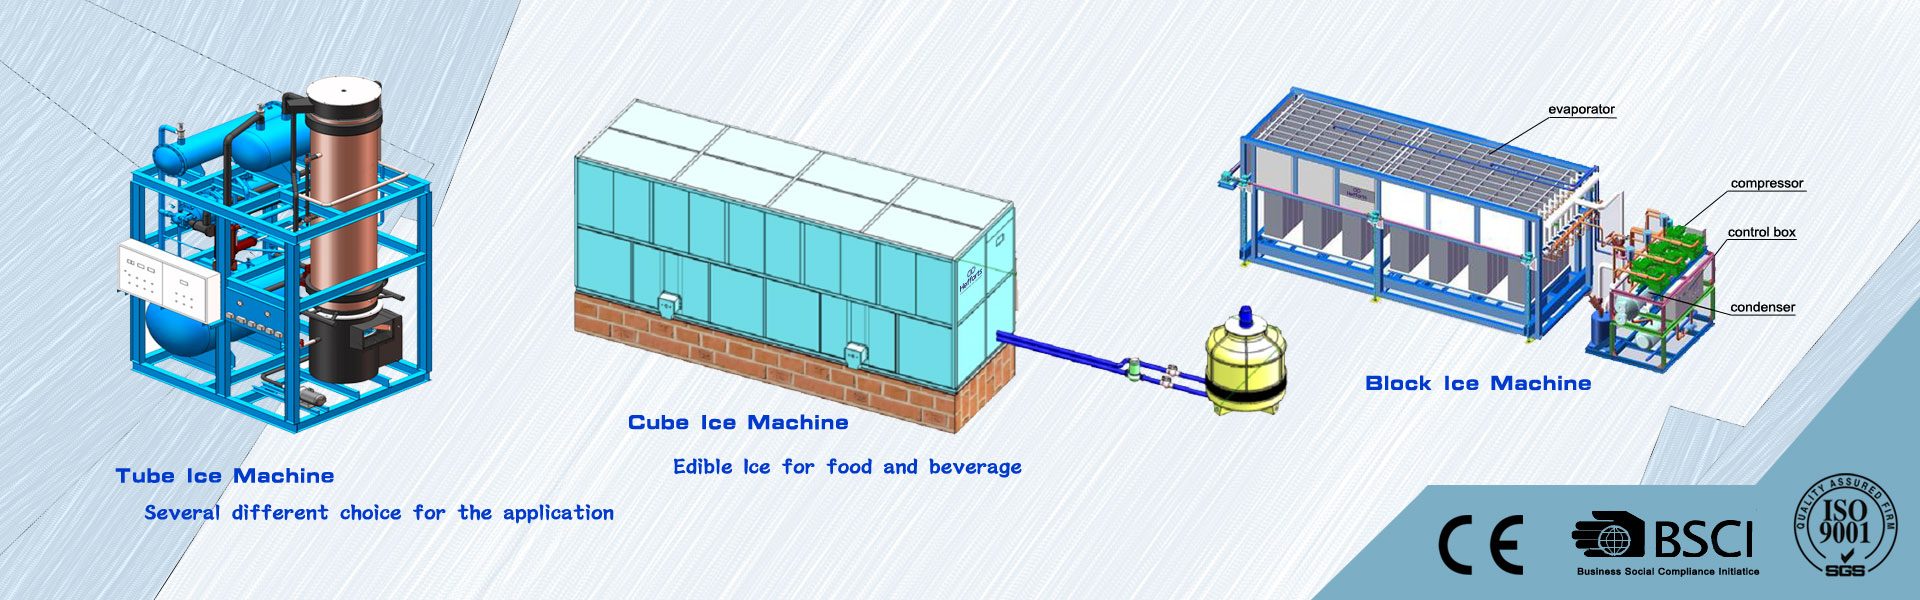 macchina per il ghiaccio, fabbricatore di ghiaccio, cella frigorifera,Guangzhou Hefforts Refrigeration Equipment Co.,Ltd.